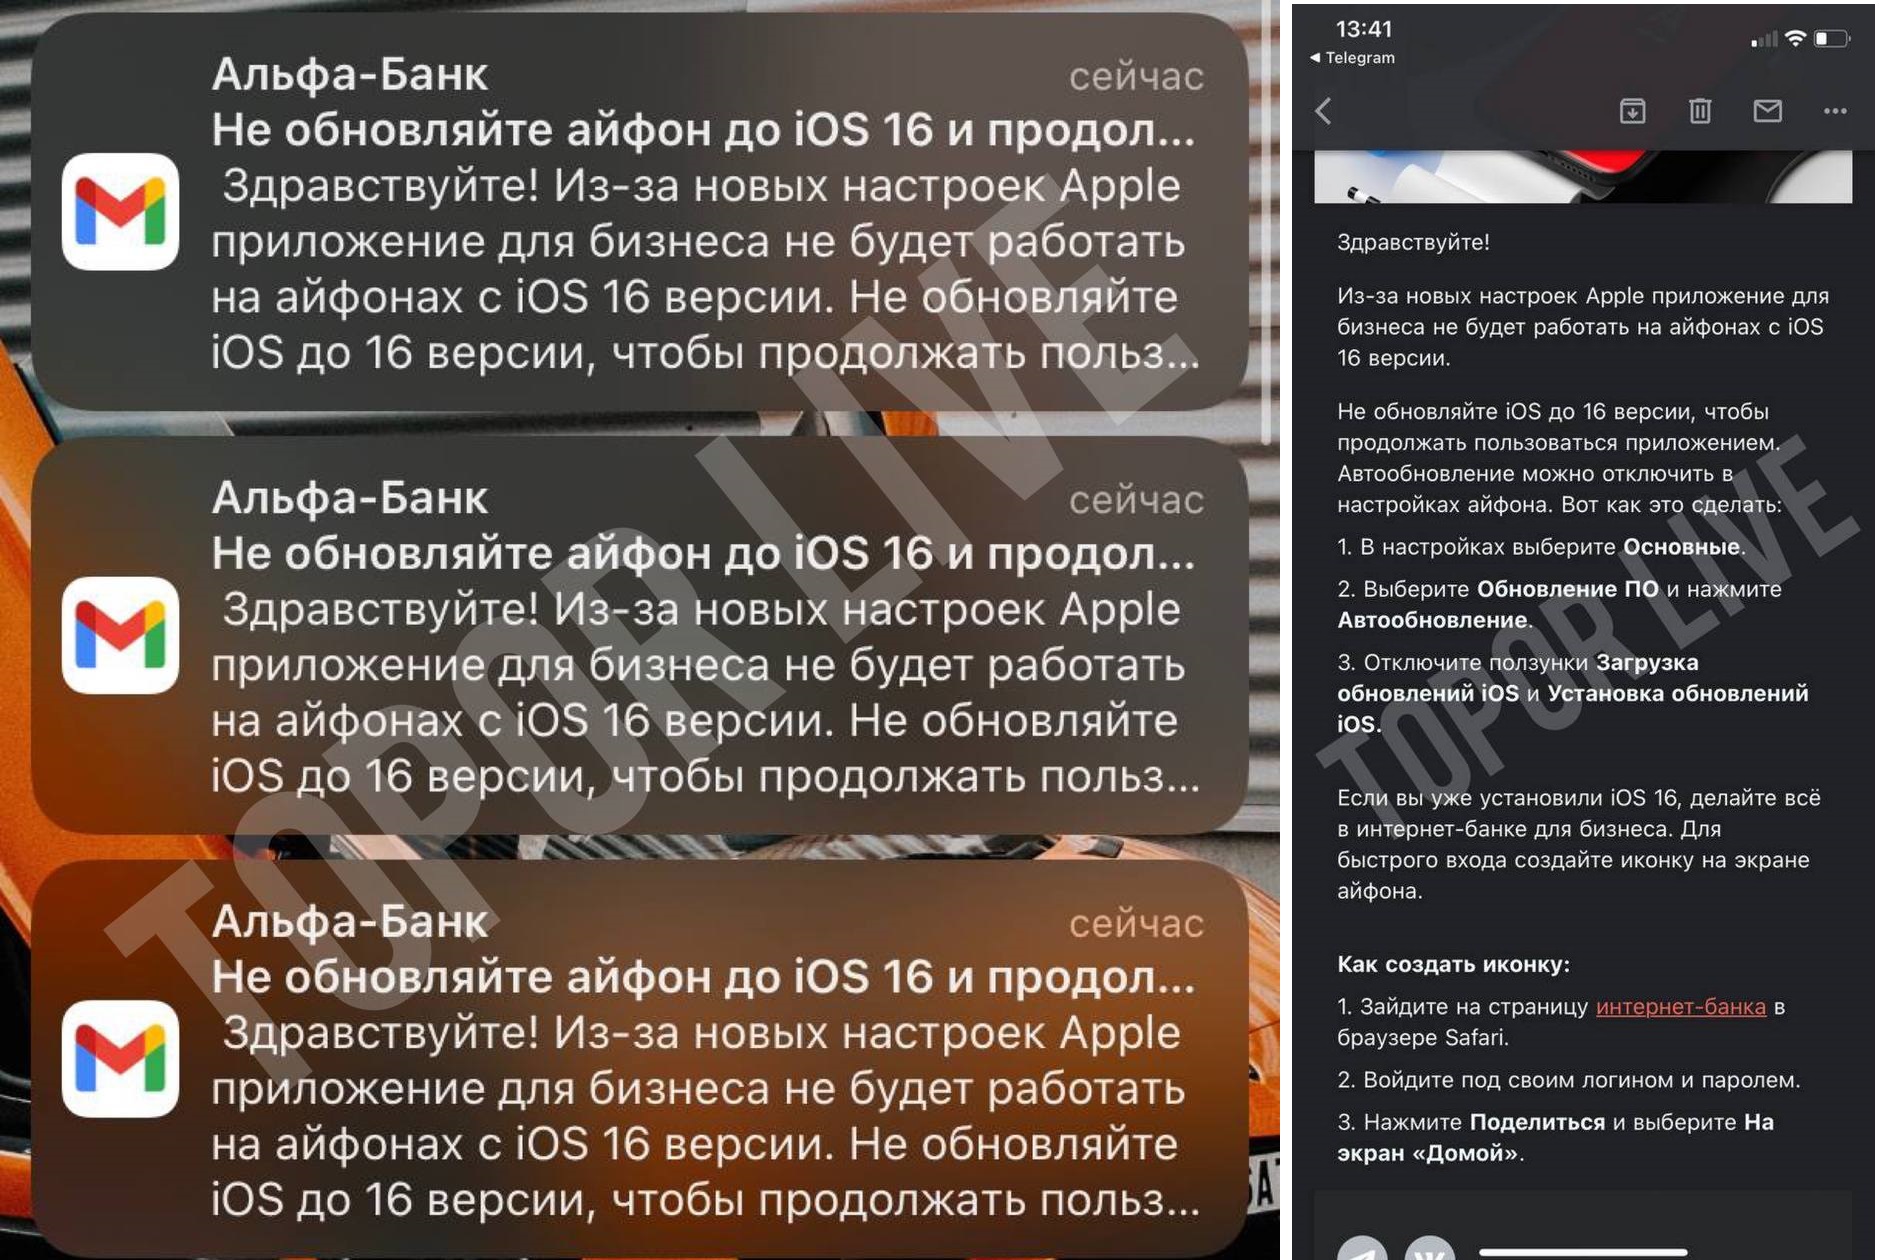 Альфа-банк» попросил пользователей не обновлять iPhone до iOS 16 / Хабр